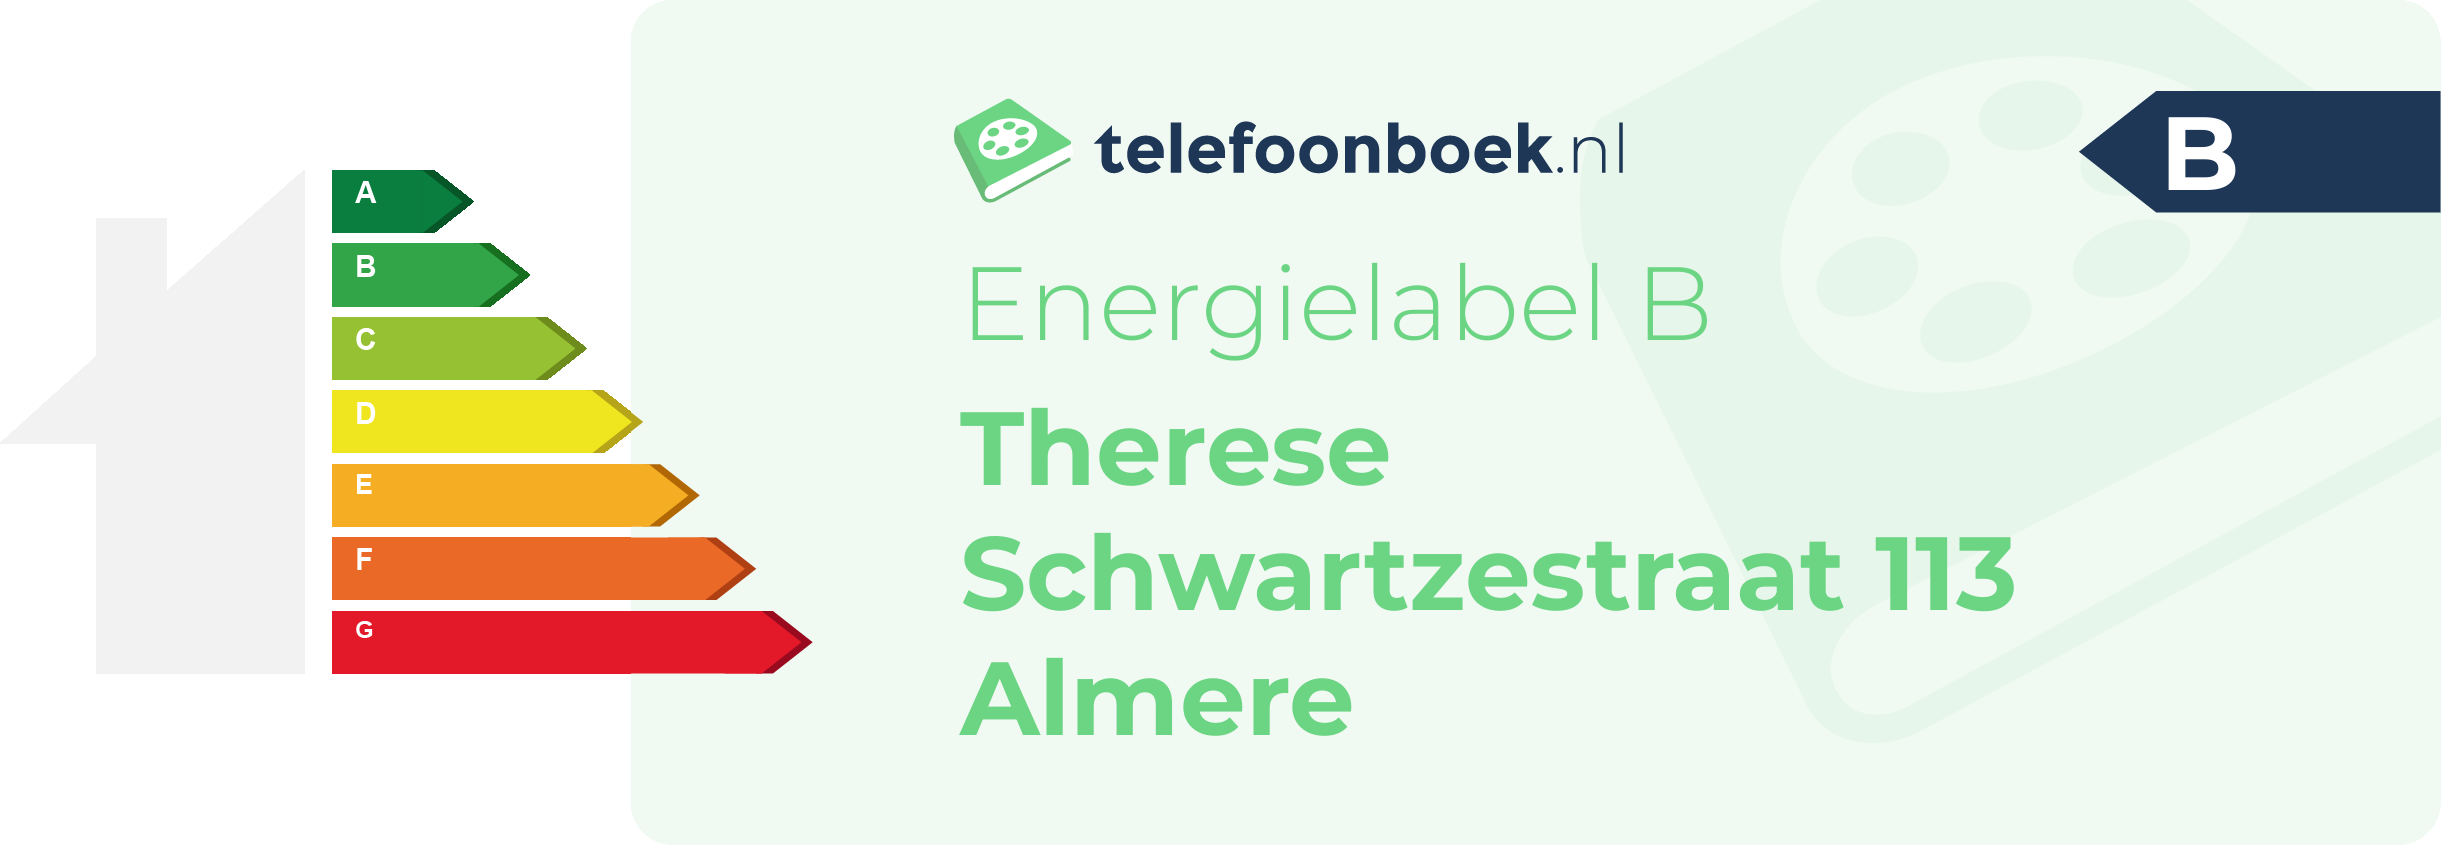 Energielabel Therese Schwartzestraat 113 Almere